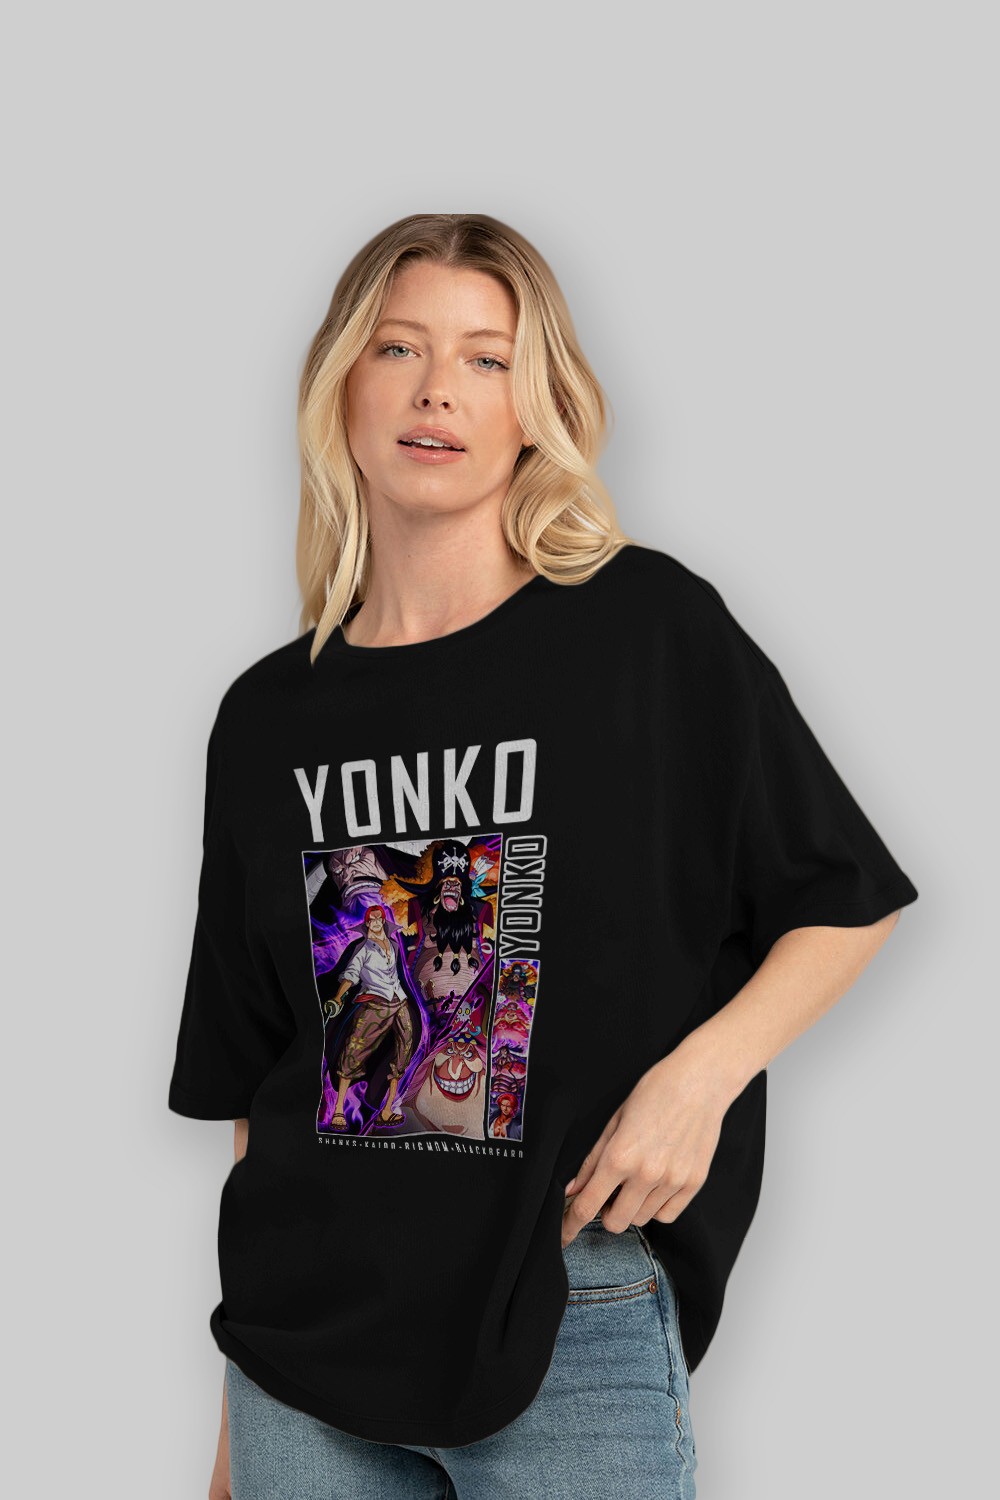 Yonko Anime Ön Baskılı Oversize t-shirt Erkek Kadın Unisex